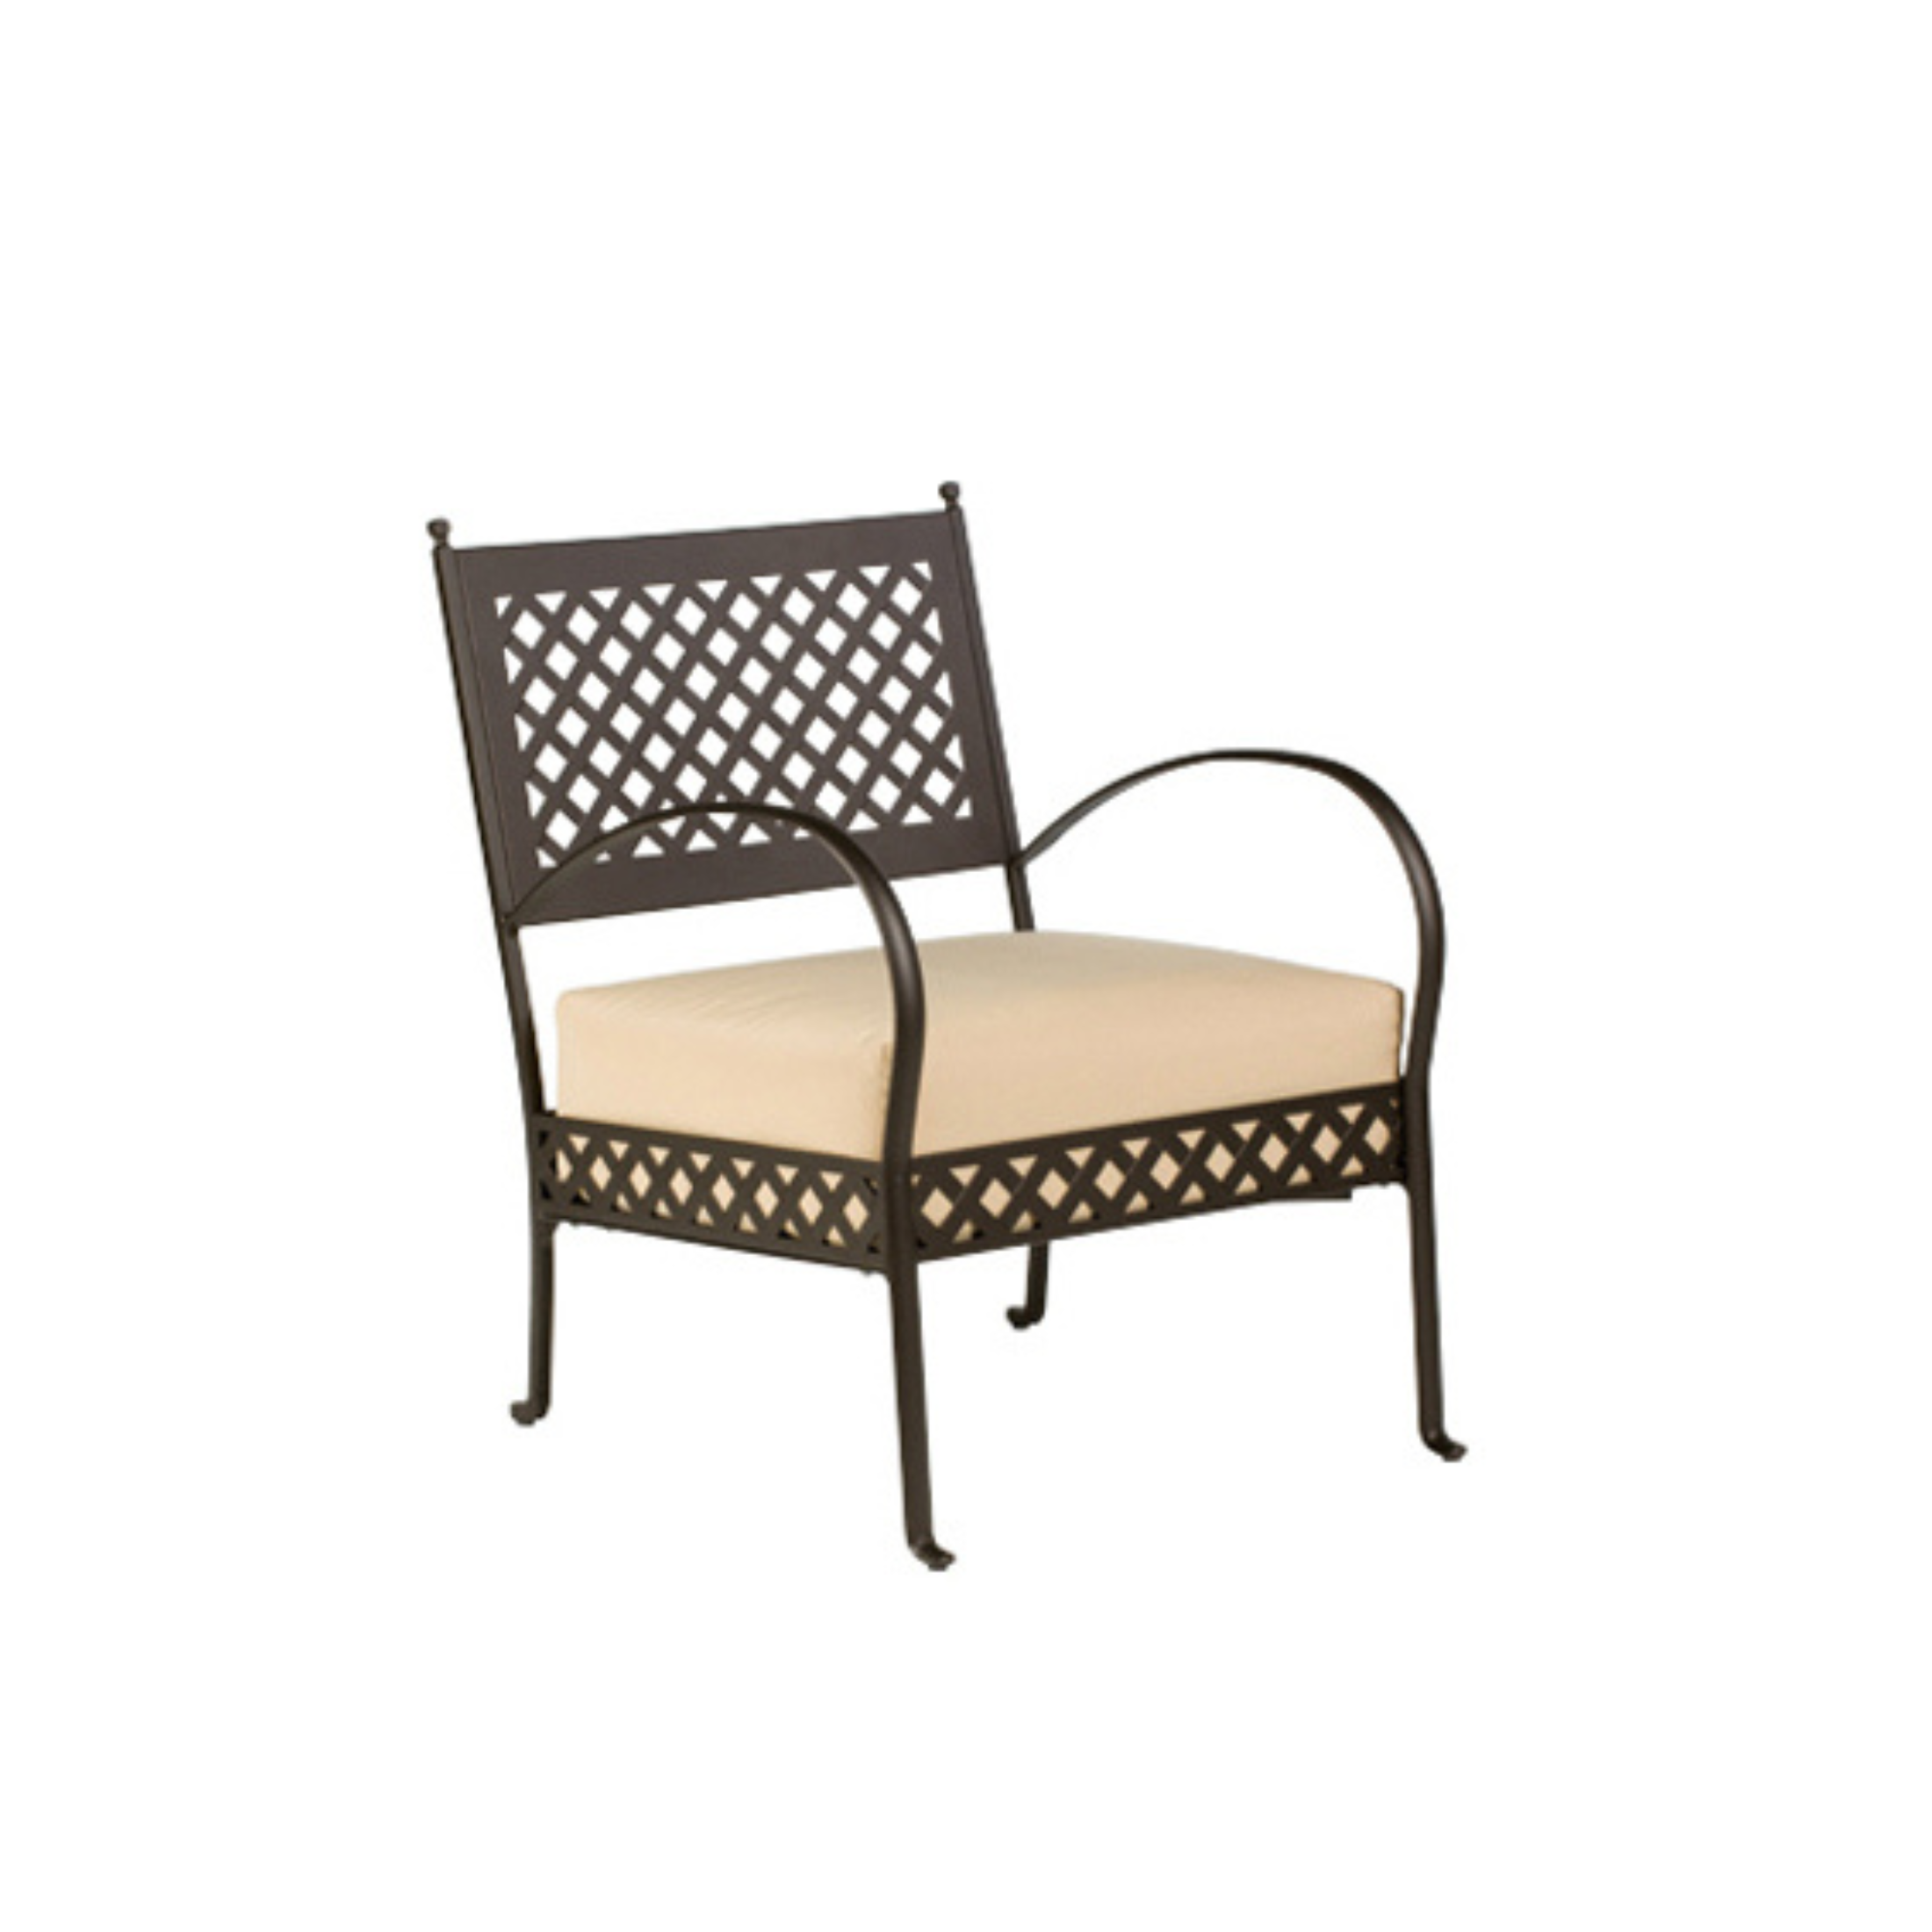 Fauteuil bas de jardin en métal chaise longue "Printemps" 64,5x75 cm 83h